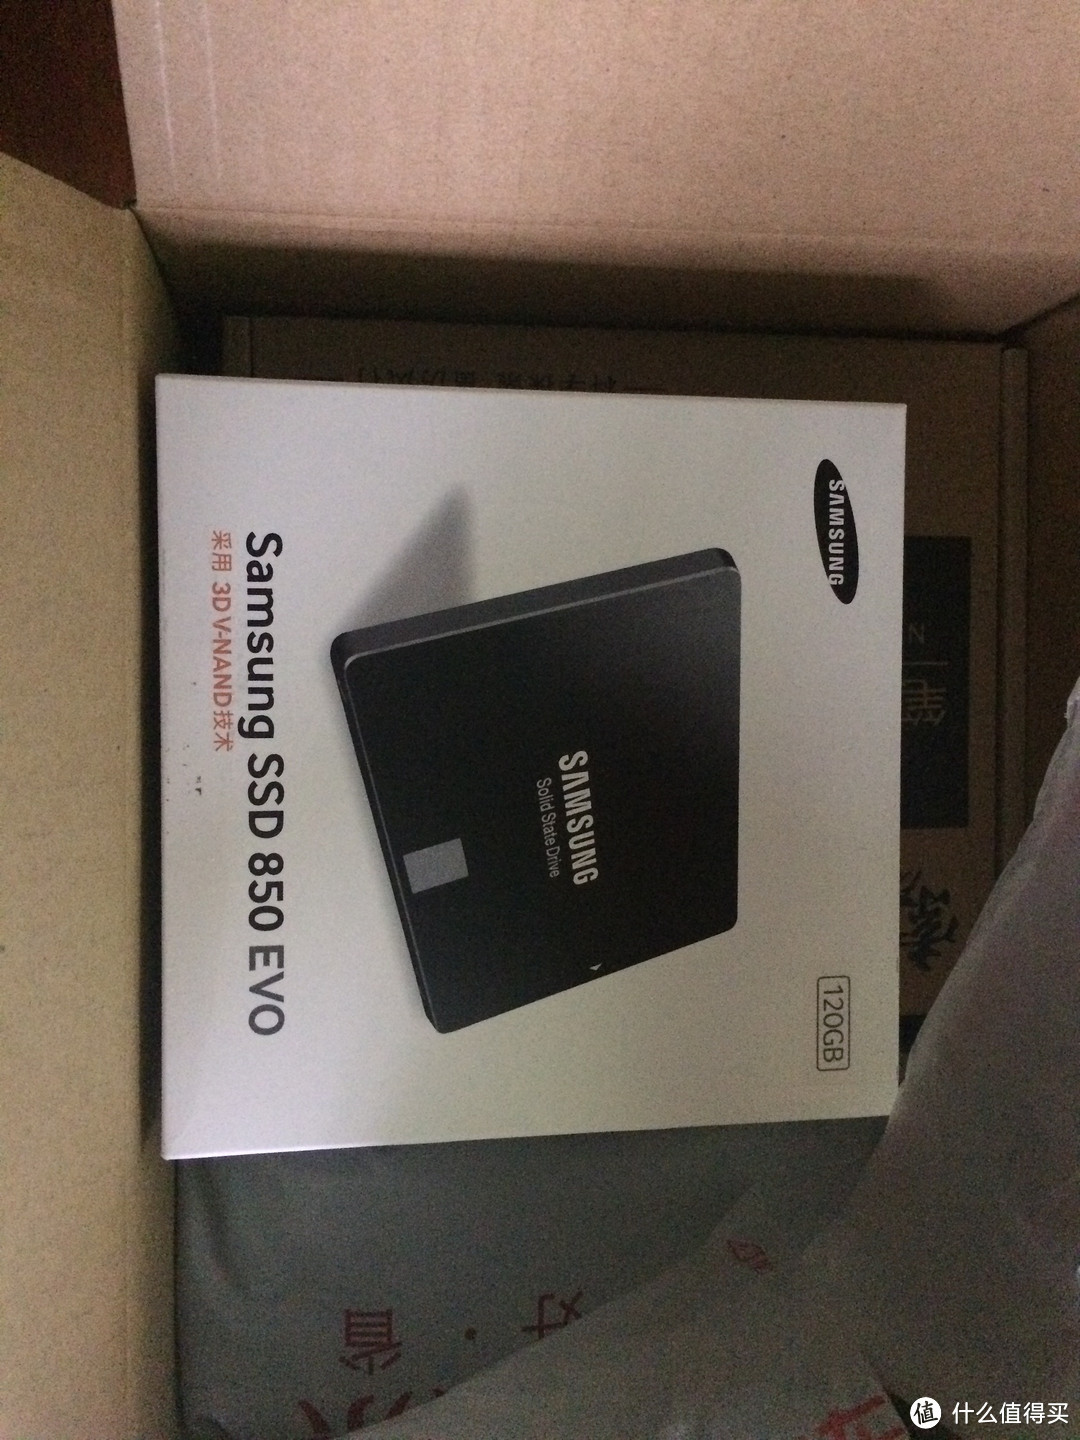 拯救笔记本换硬盘记：SAMSUNG 三星 850 EVO 120G SSD